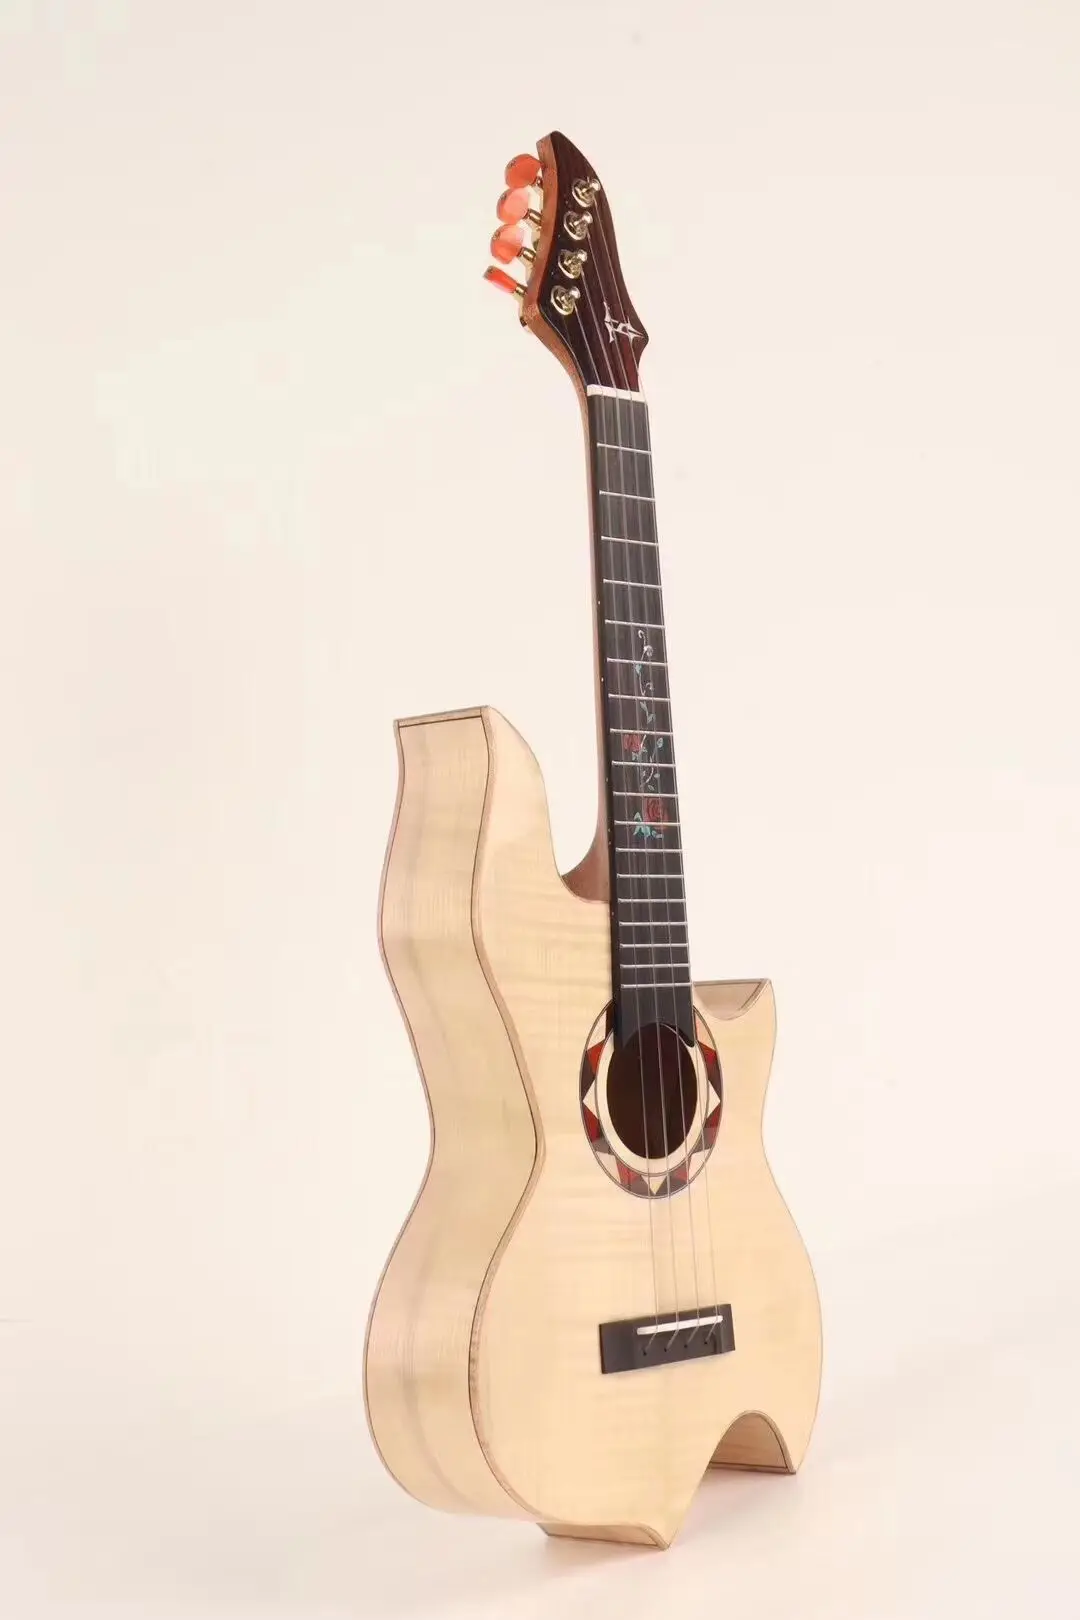 26 inch ukulele shaped tiger maple maple